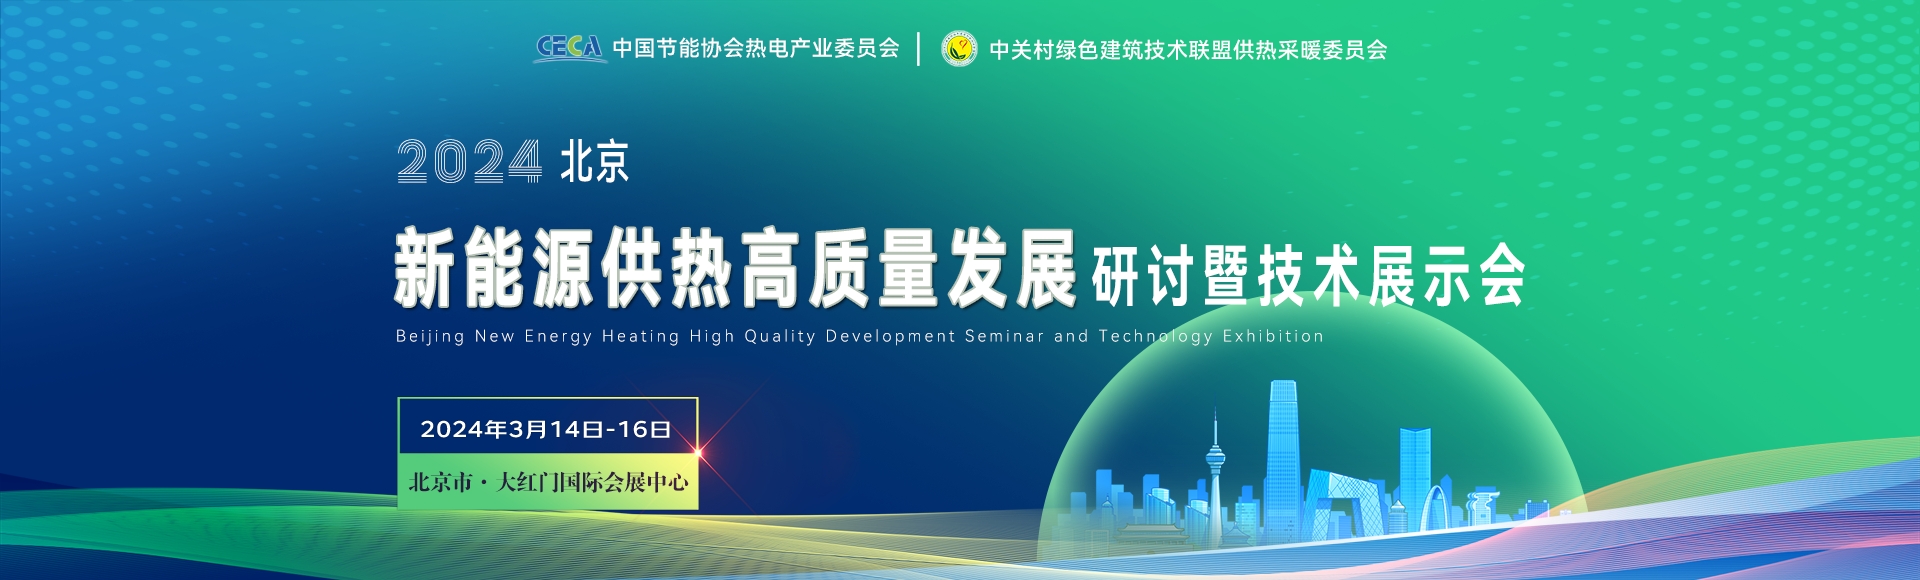 2024北京新能源供热高质量发展研讨会